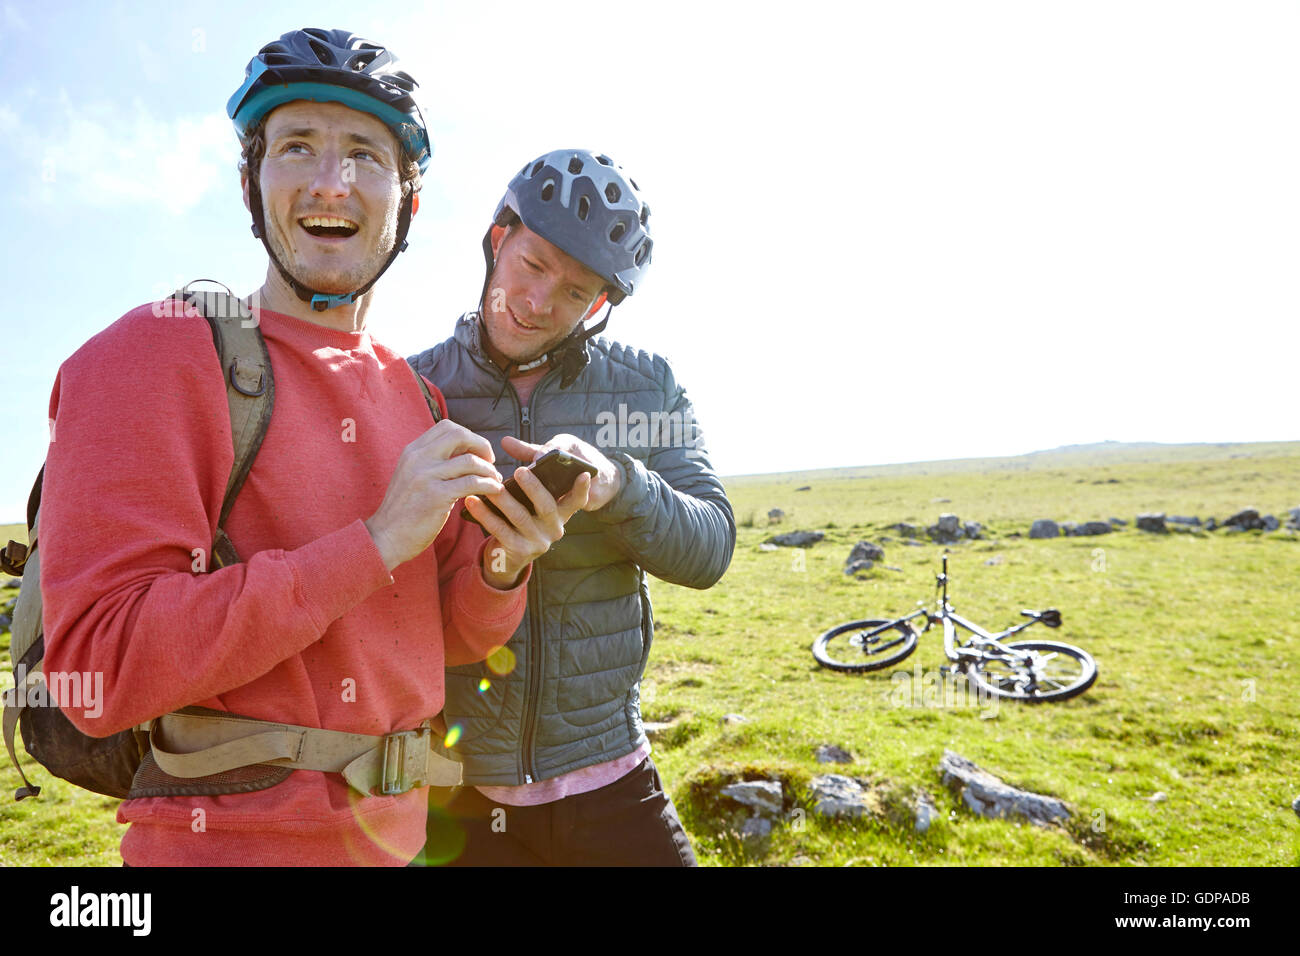 Los ciclistas en la ladera mirando el smartphone Foto de stock